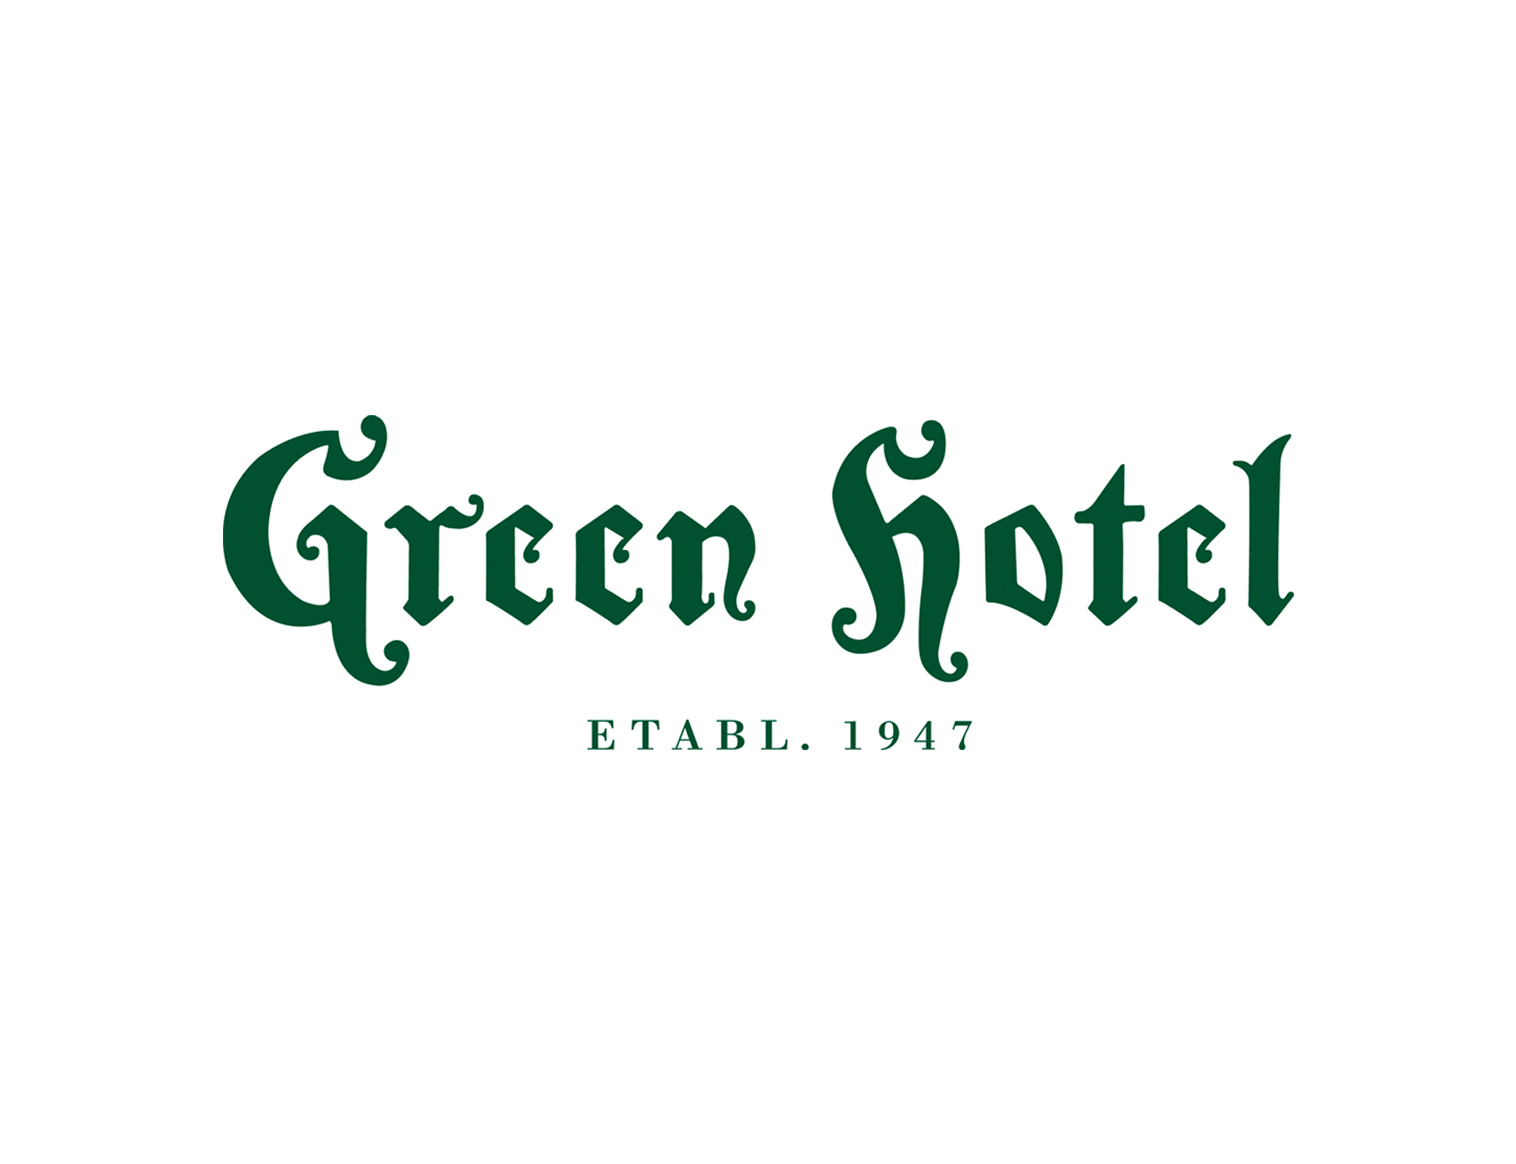 greenhotel